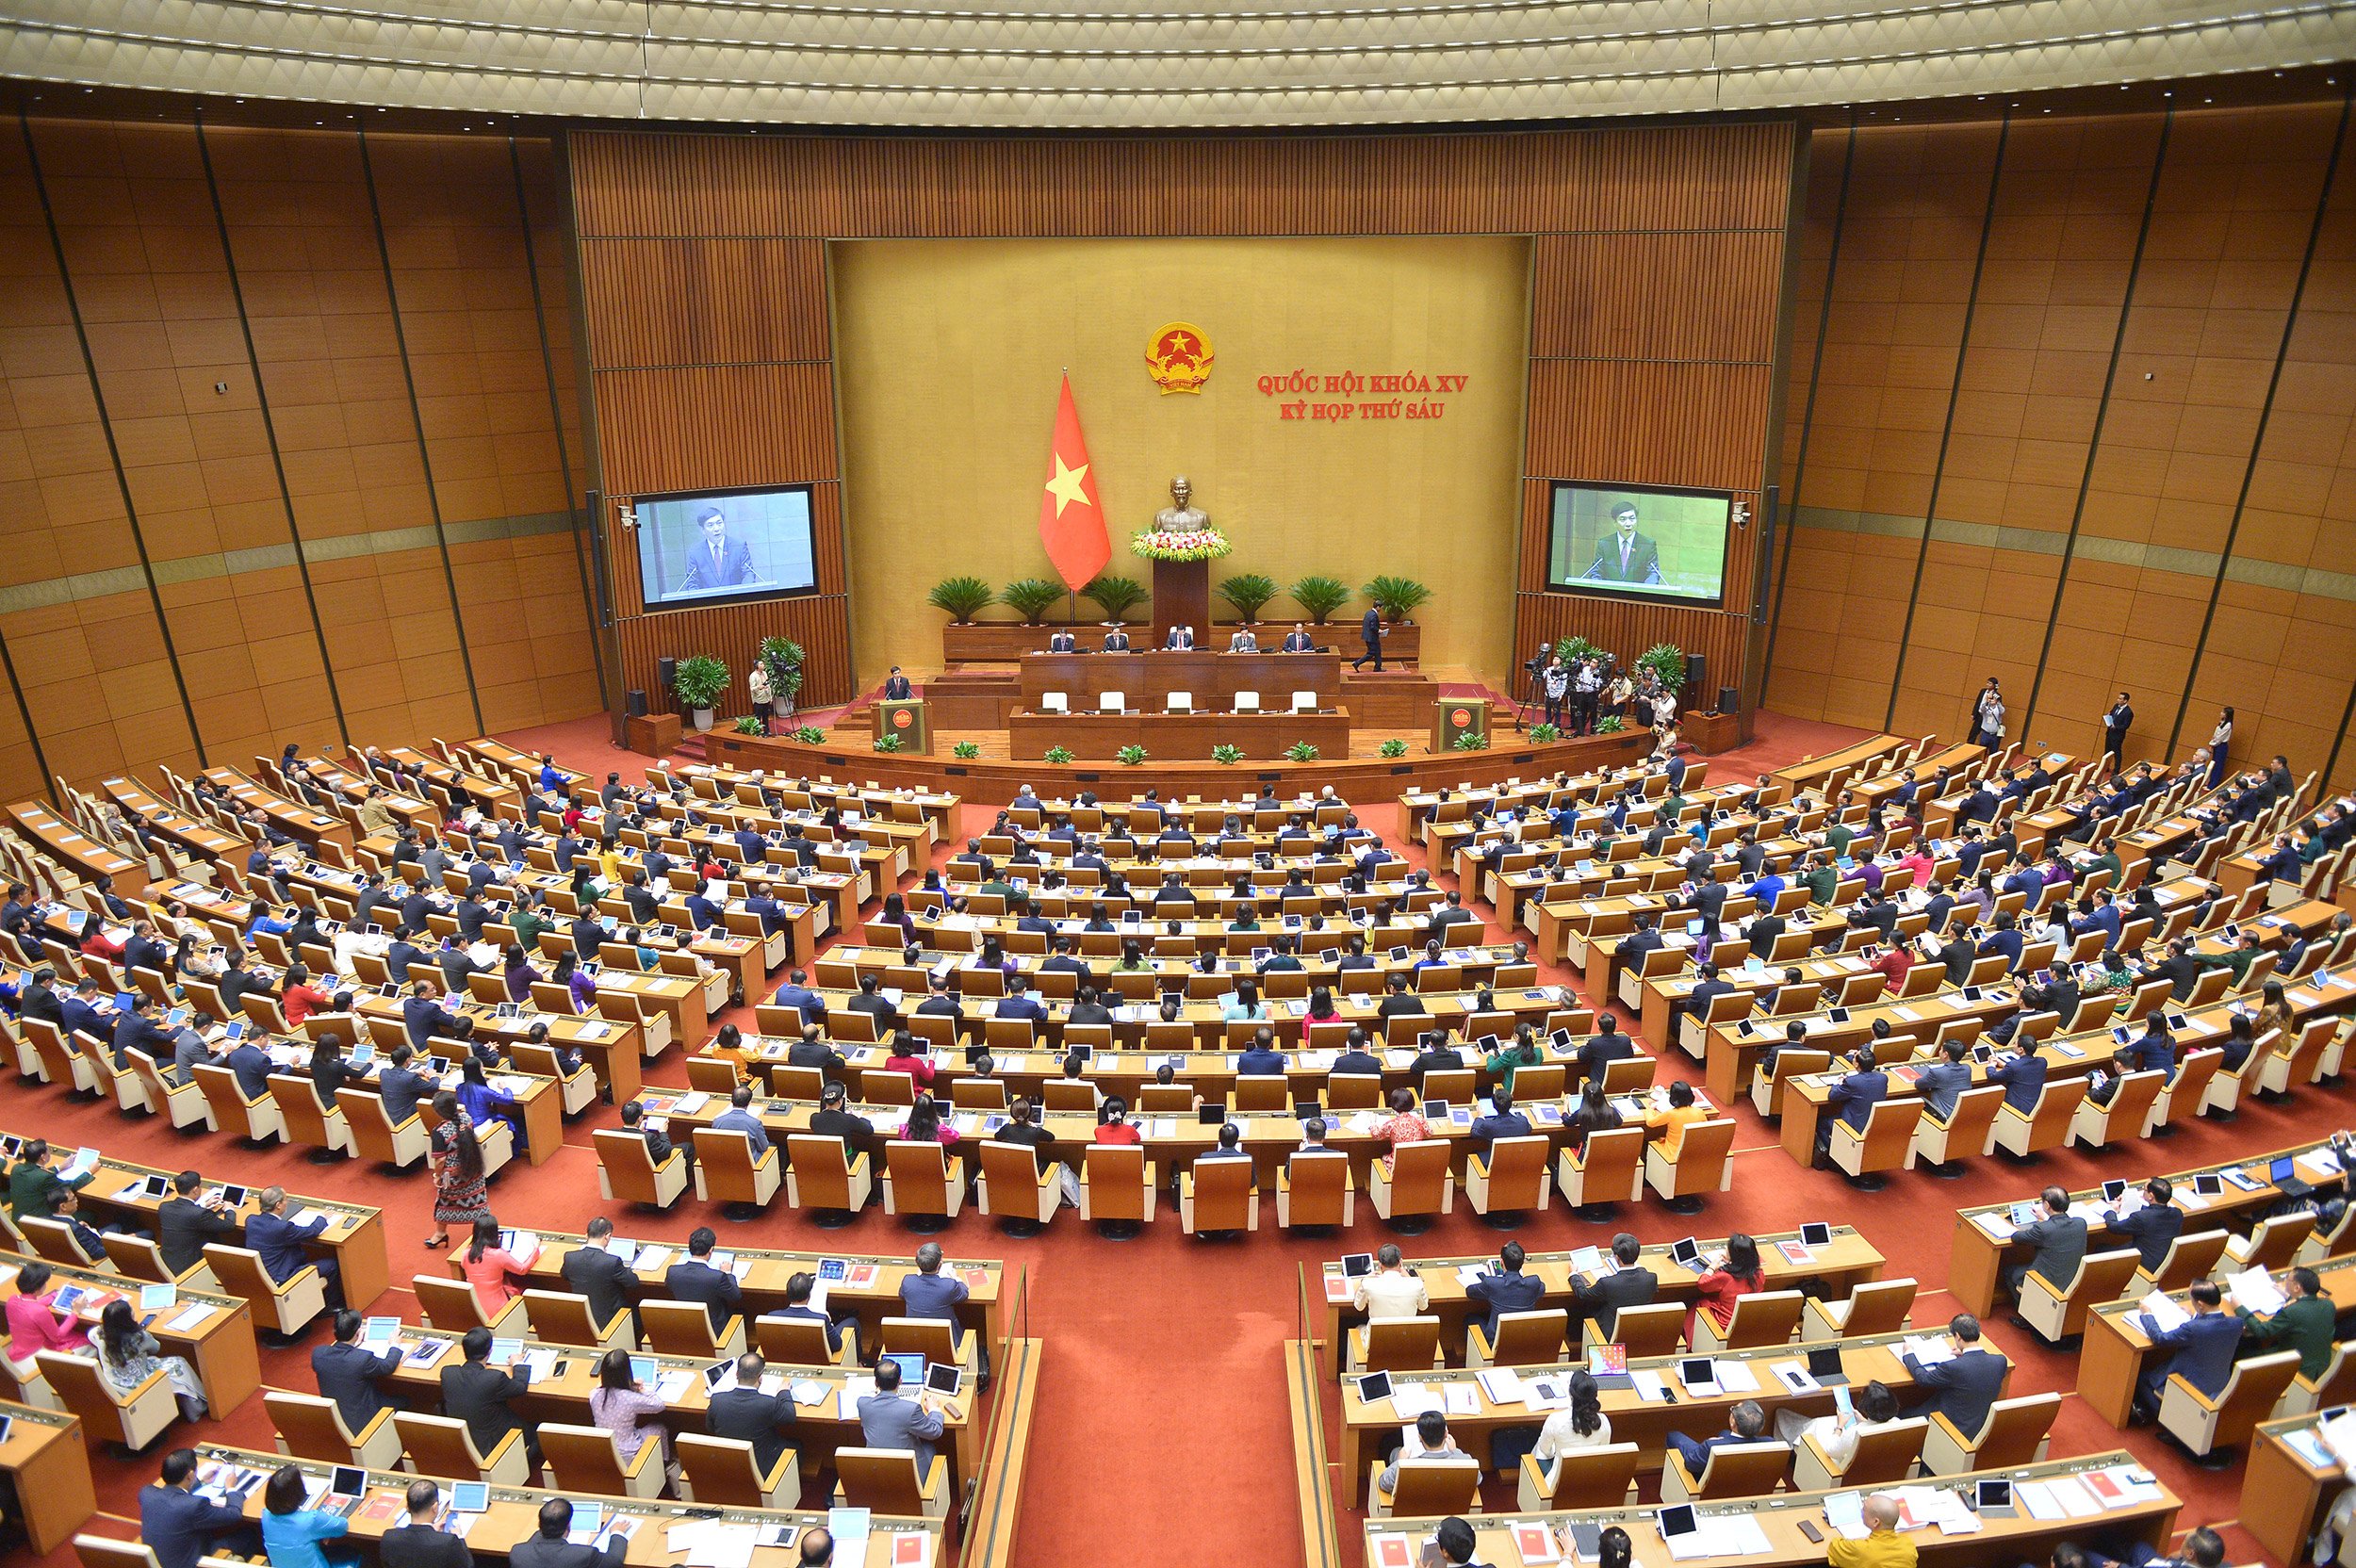 Chùm ảnh: Các vị lãnh đạo đảng, nhà nước đến dự phiên khai mạc kỳ họp thứ 6, Quốc hội khóa XV (theo: quochoi.vn)